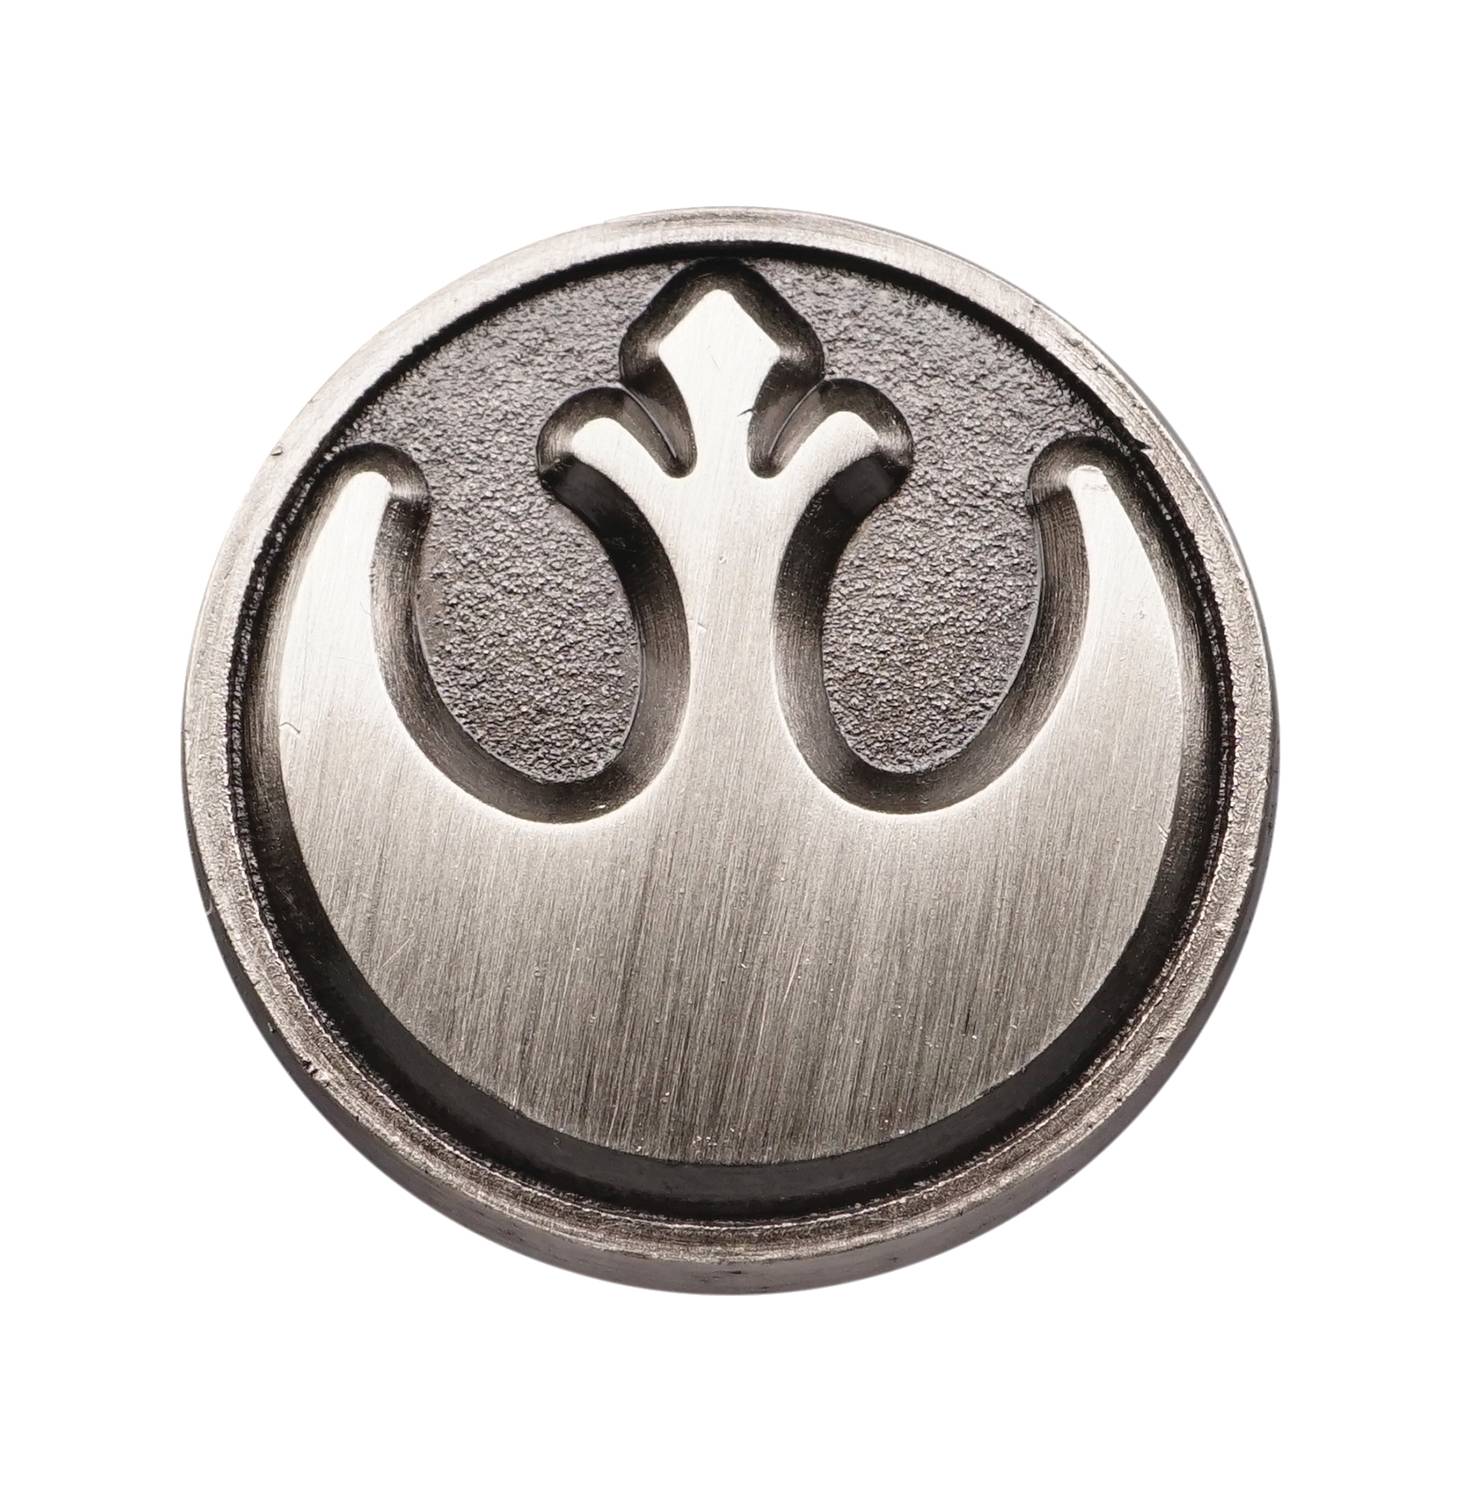 Mar212515 Star Wars Rebel Alliance Symbol Pewter Lapel Pin Previews